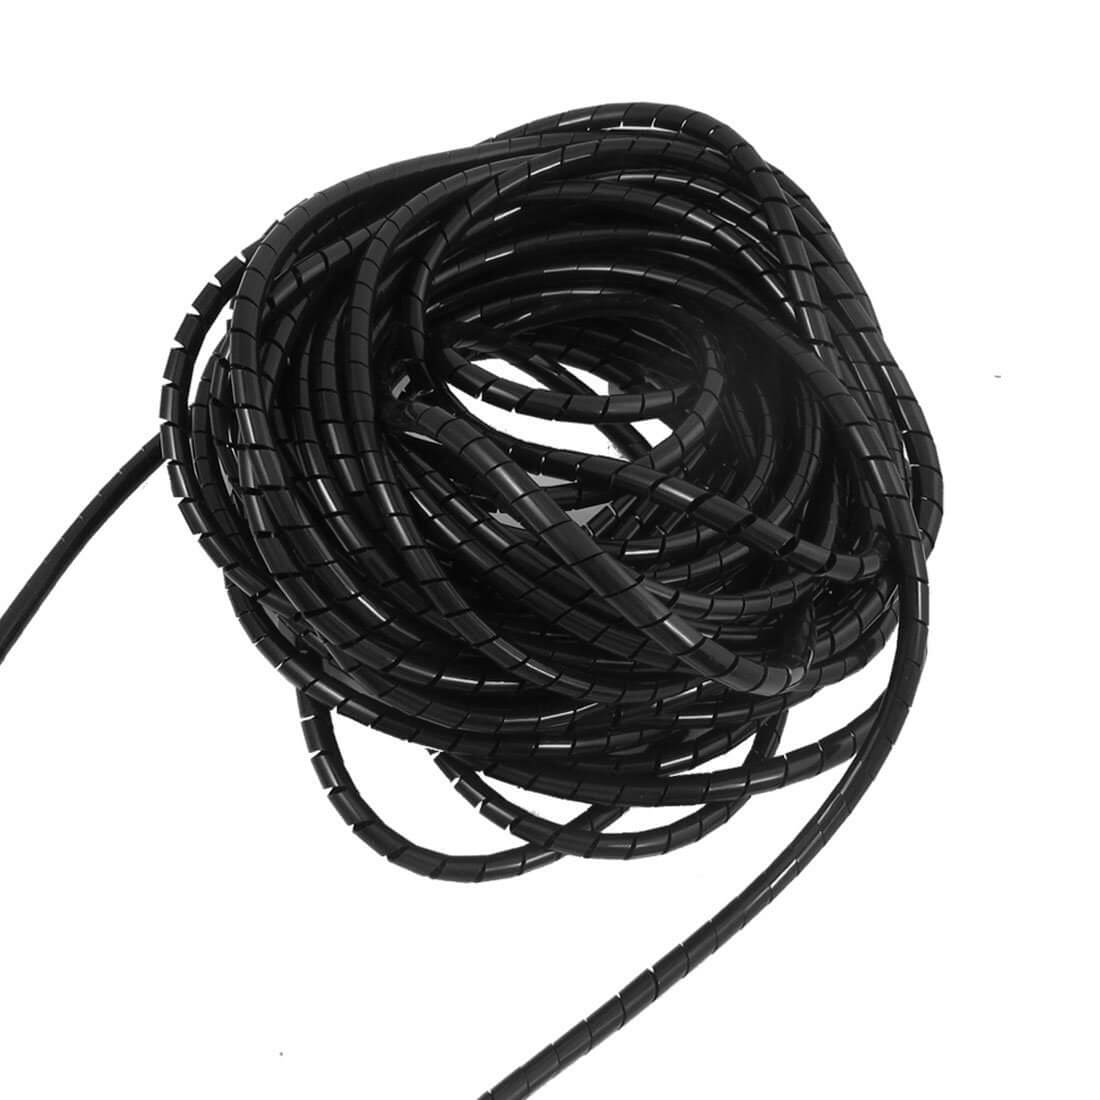 Organizador de cables espiral negro 4mm a 6mm - aelectronics